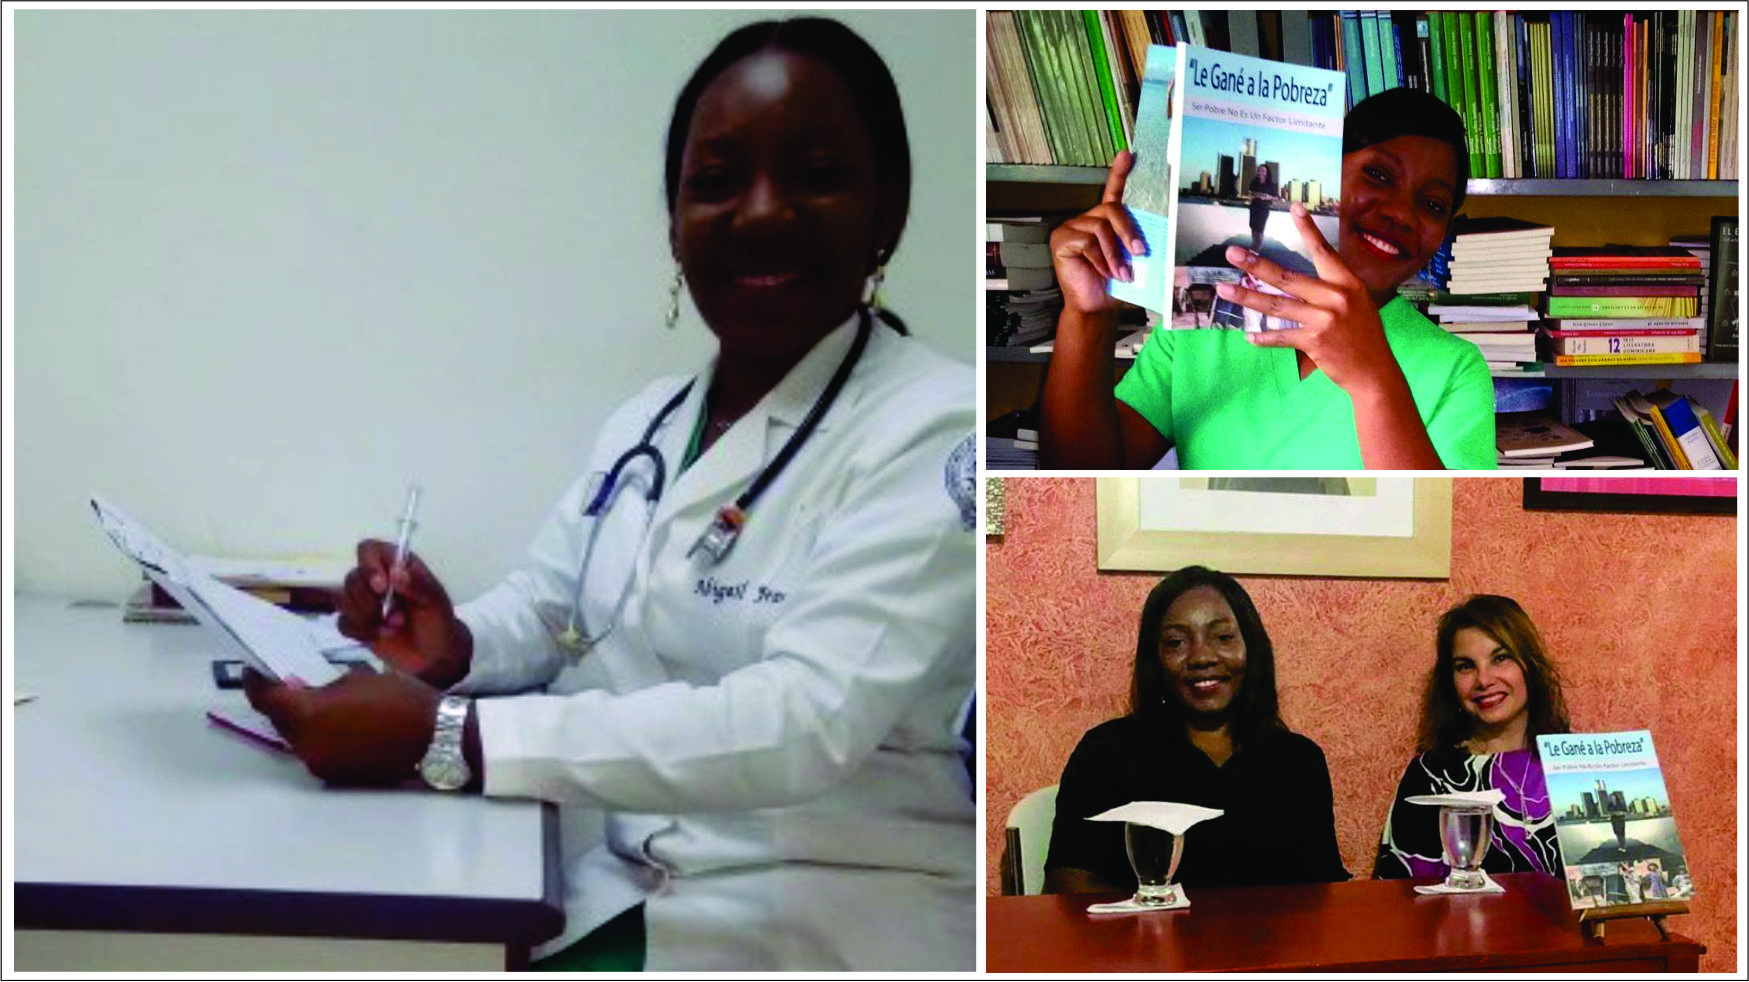 De empleada doméstica a doctora en Medicina y lanza libro Le gané a la pobreza